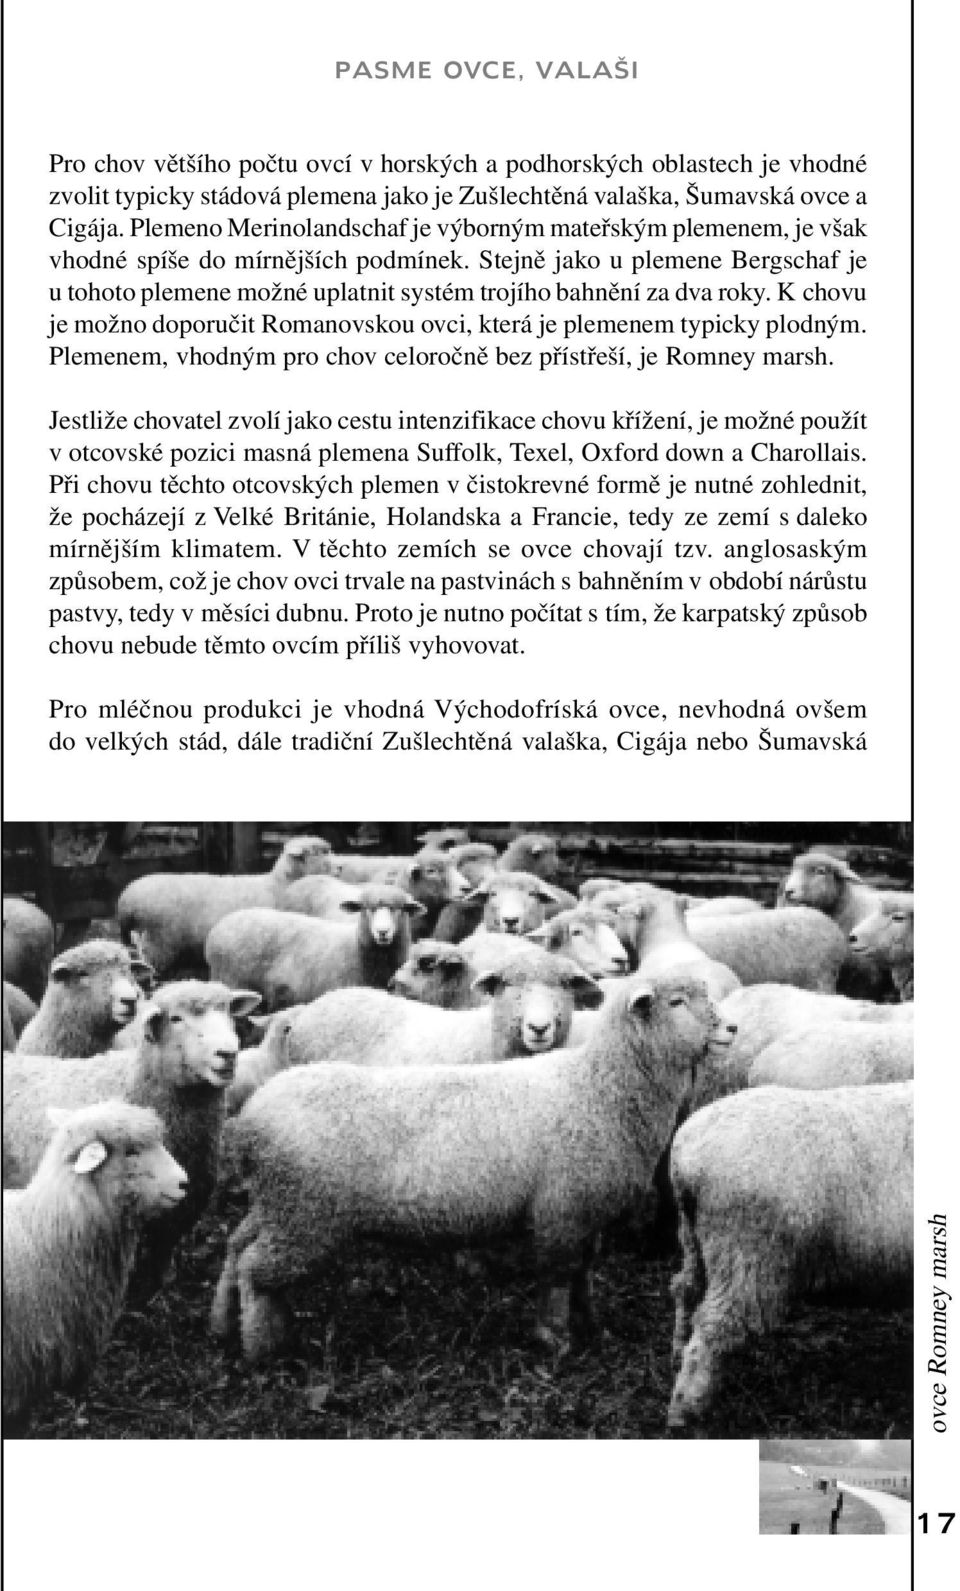 Stejně jako u plemene Bergschaf je u tohoto plemene možné uplatnit systém trojího bahnění za dva roky. K chovu je možno doporučit Romanovskou ovci, která je plemenem typicky plodným.